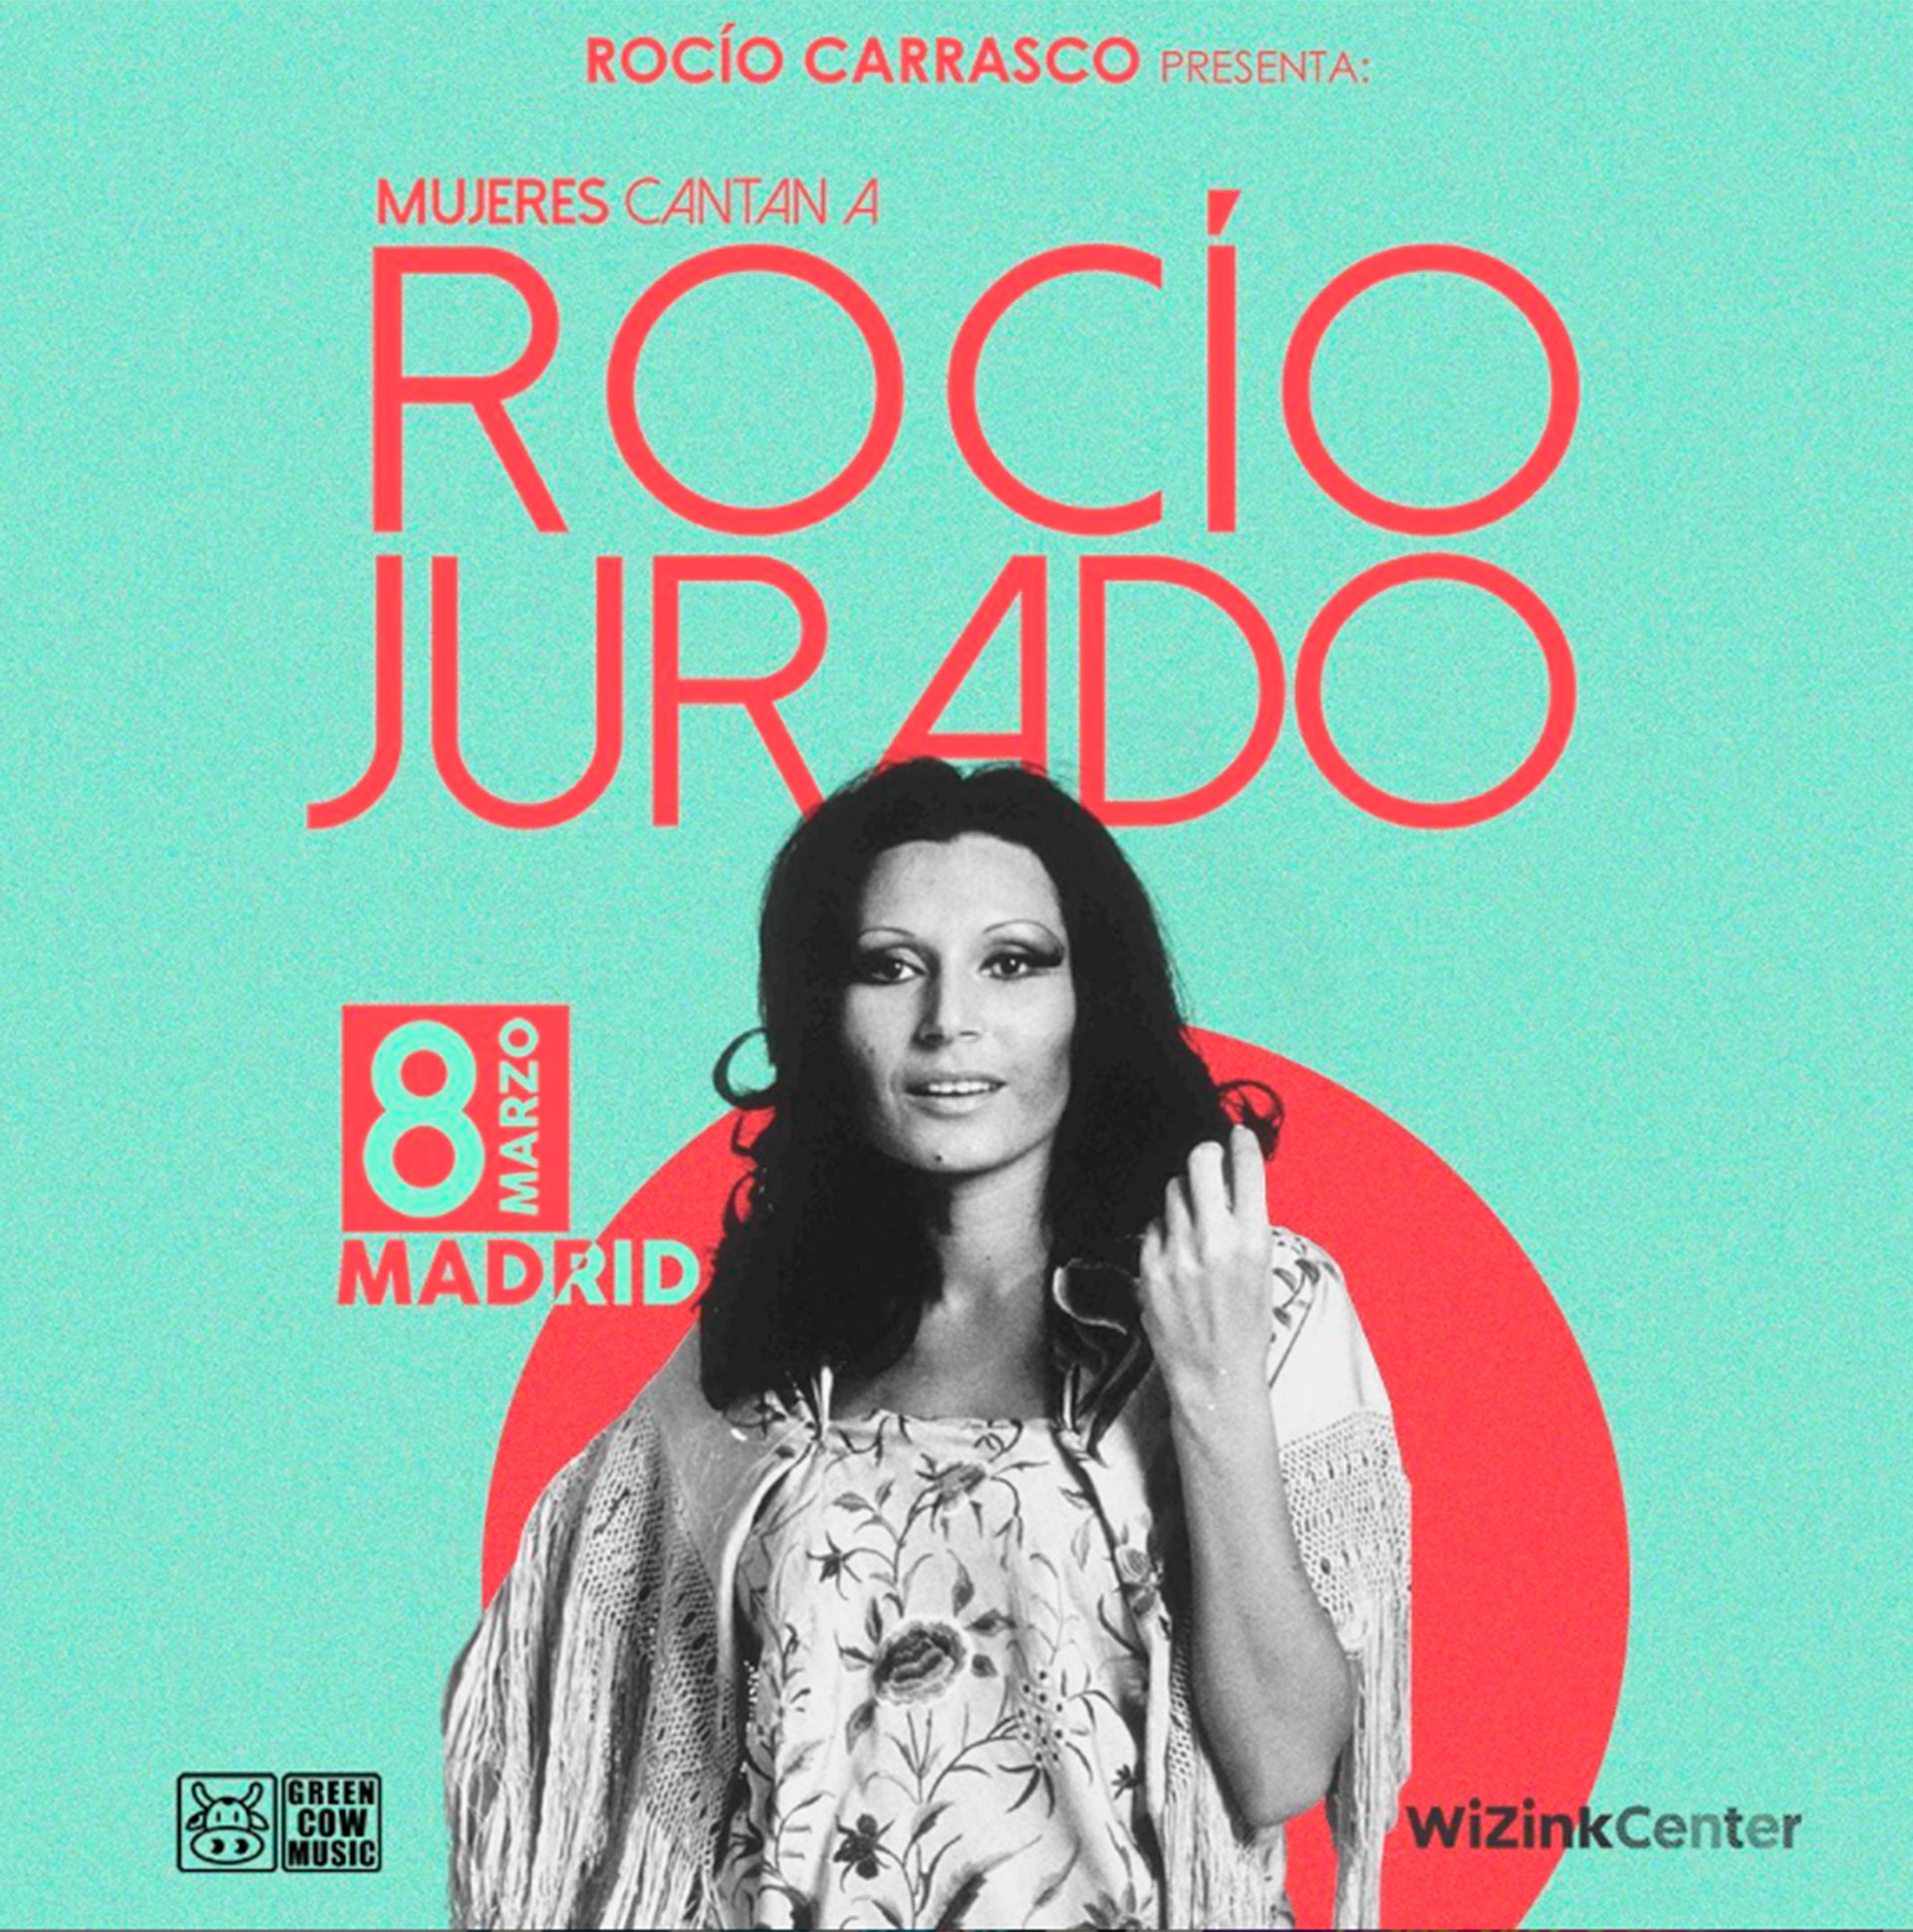 Un homenaje a Rocío Jurado en Sevilla, cancelado antes de que vea la luz